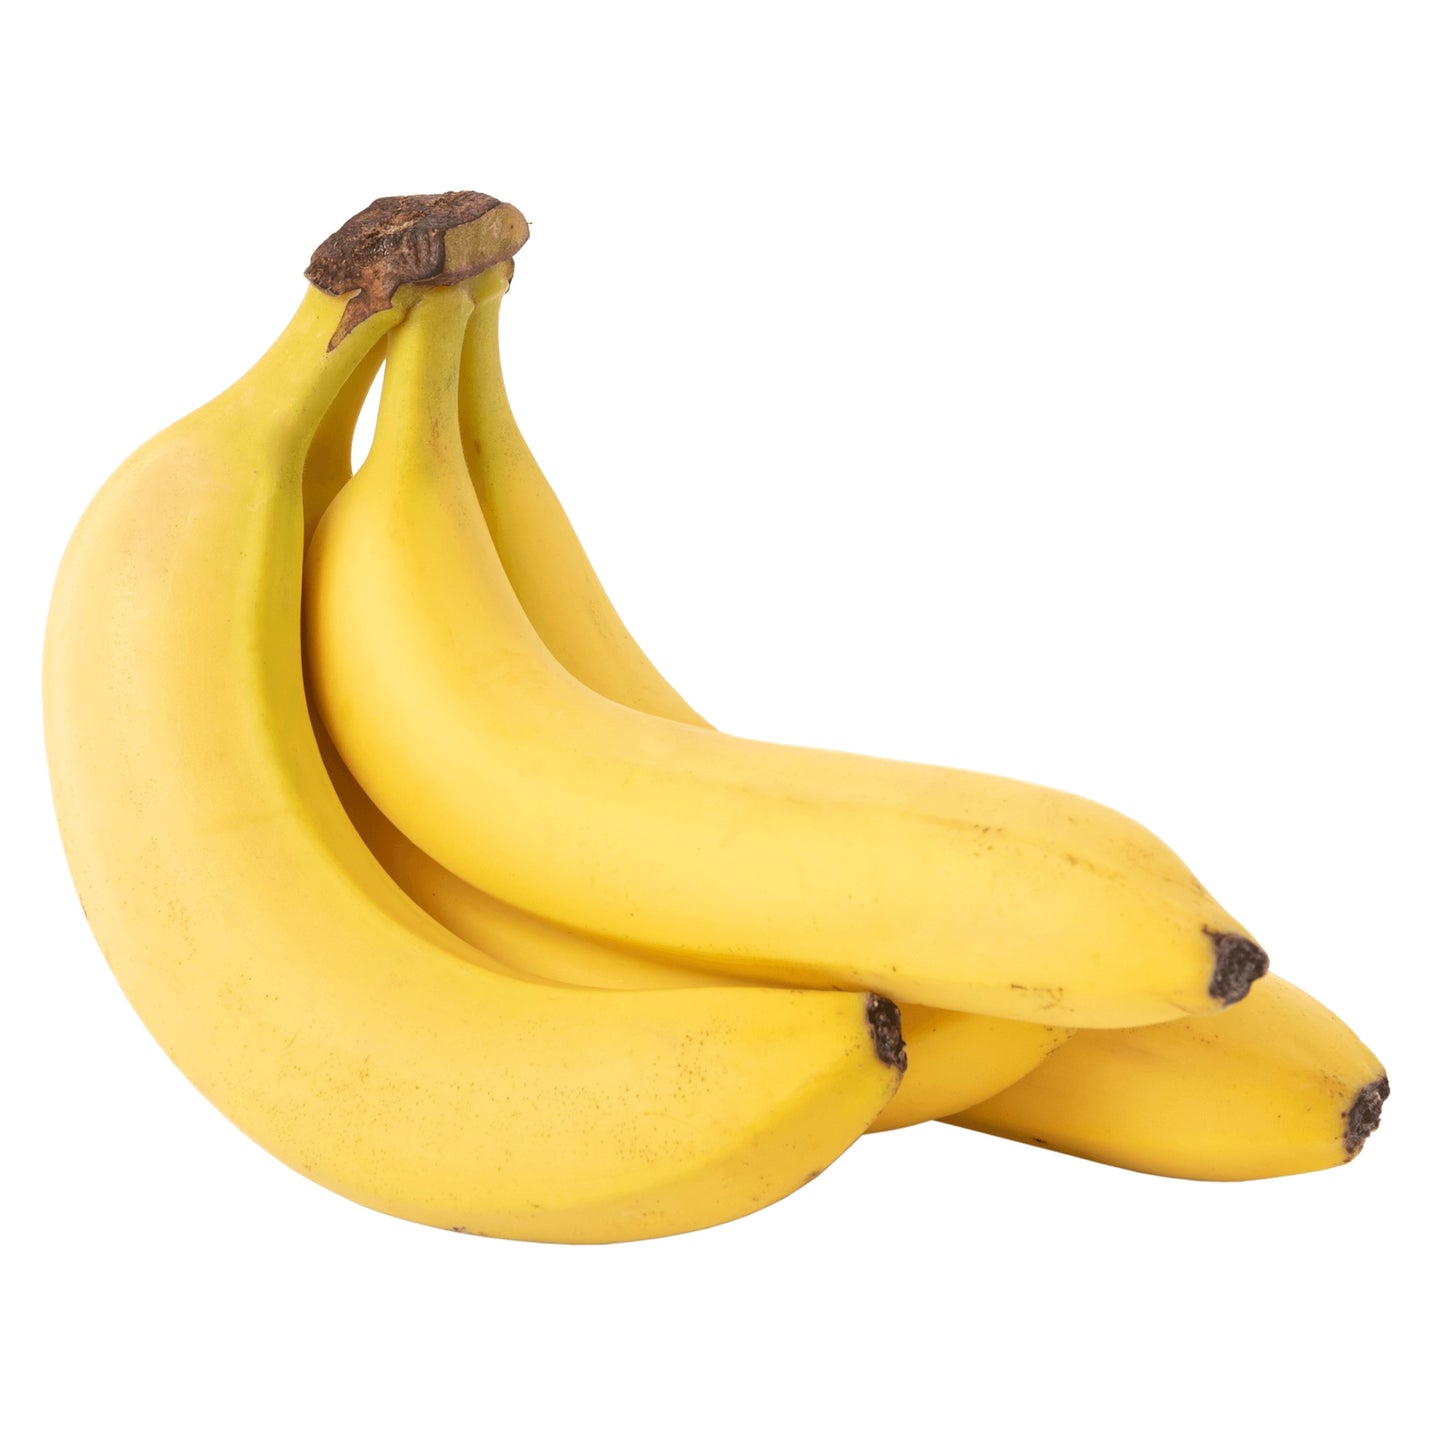 Banana(per pound)